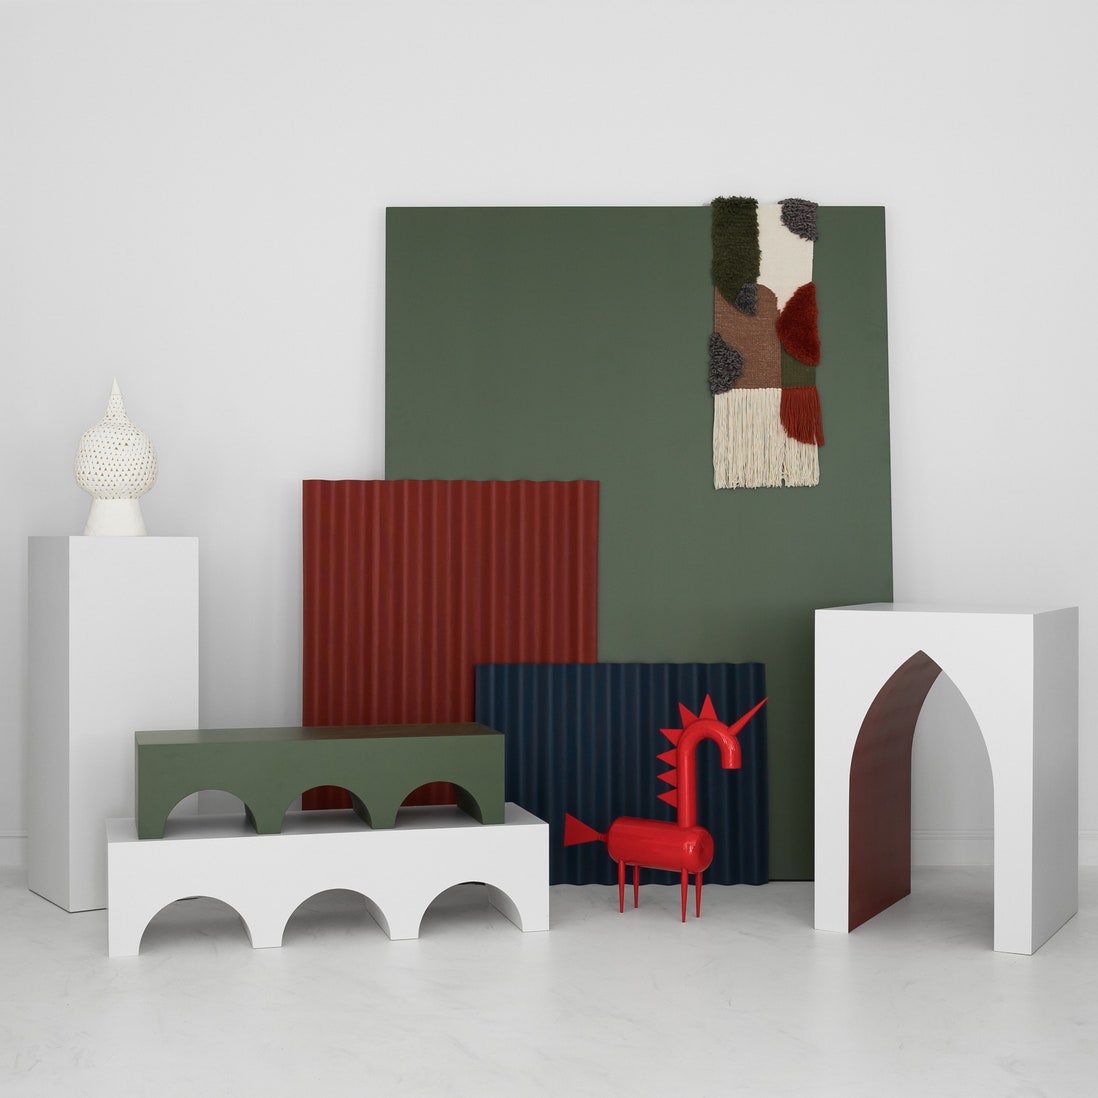 Первая коллекция мебели и декора от проекта “Палаты”